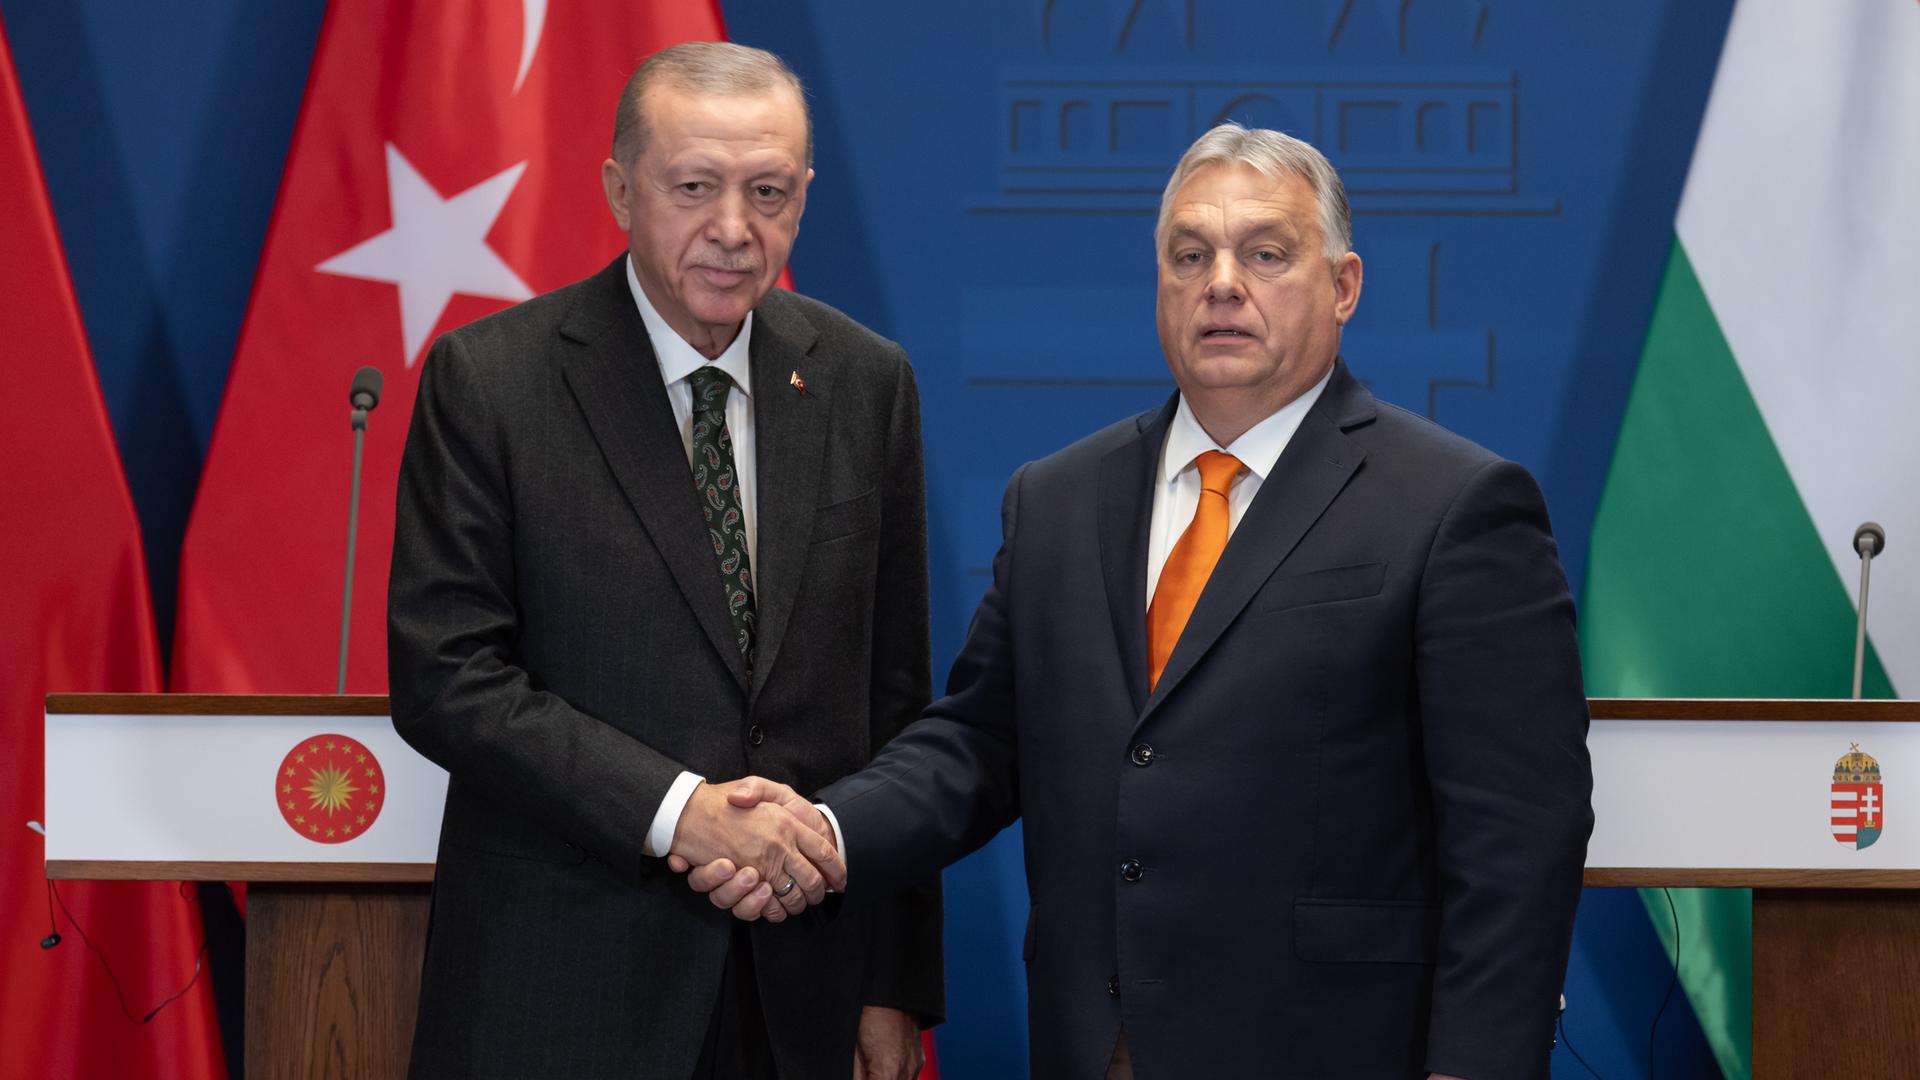 Recep Tayyip Erdogan und Viktor Orban schütteln Hände vor Rednerpulten und aufgestellten Flaggen.